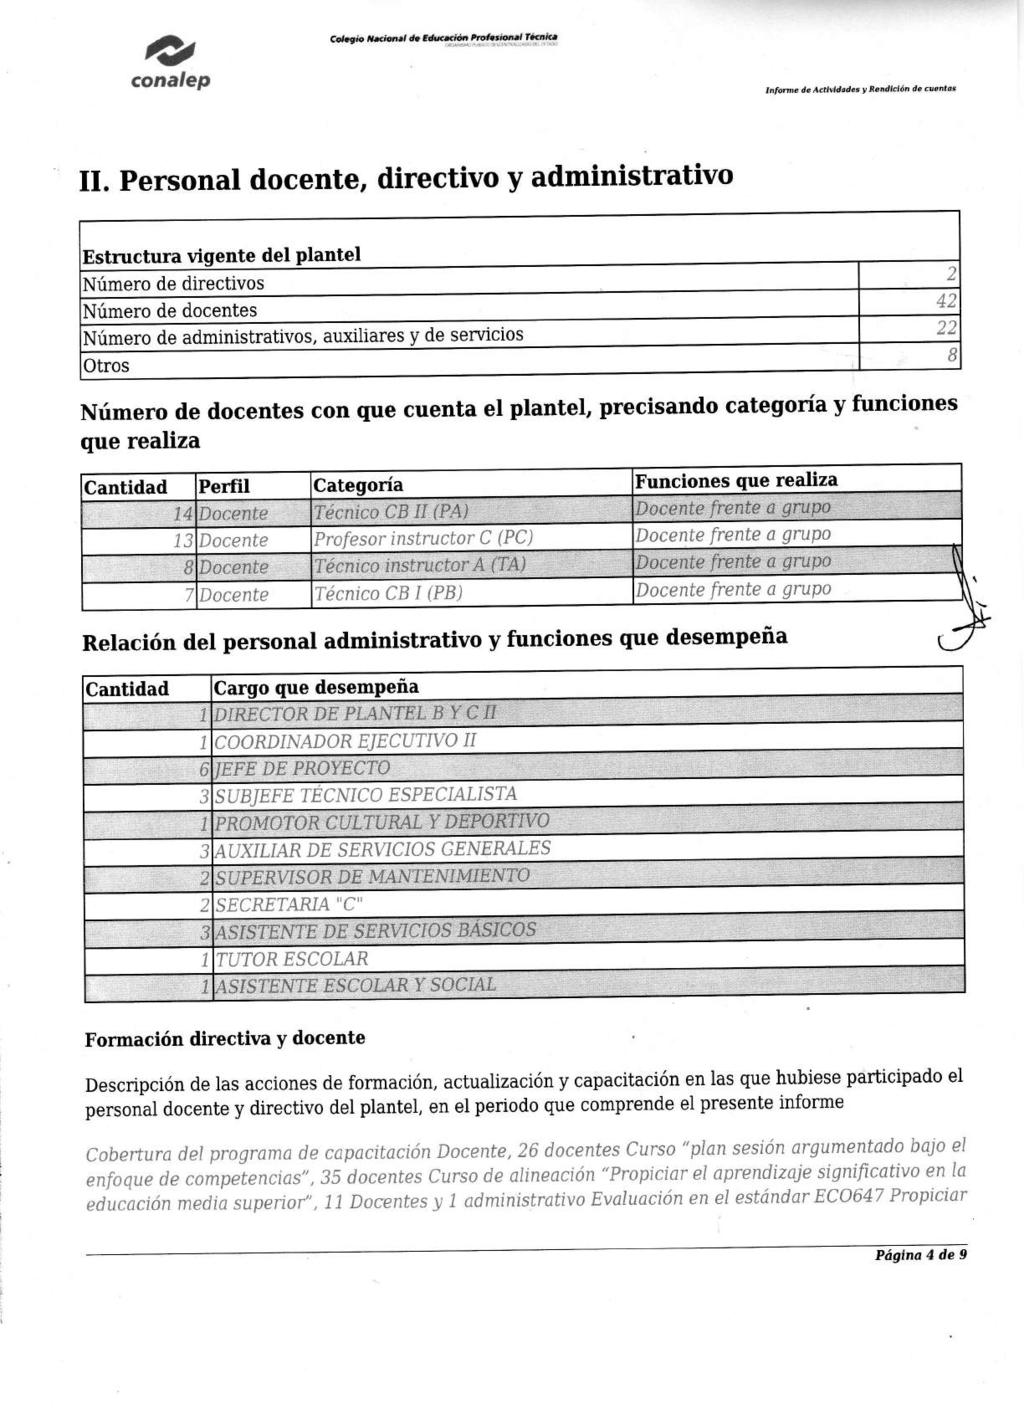 Informe de AcHvidodes y Rendición de cuentas 11.